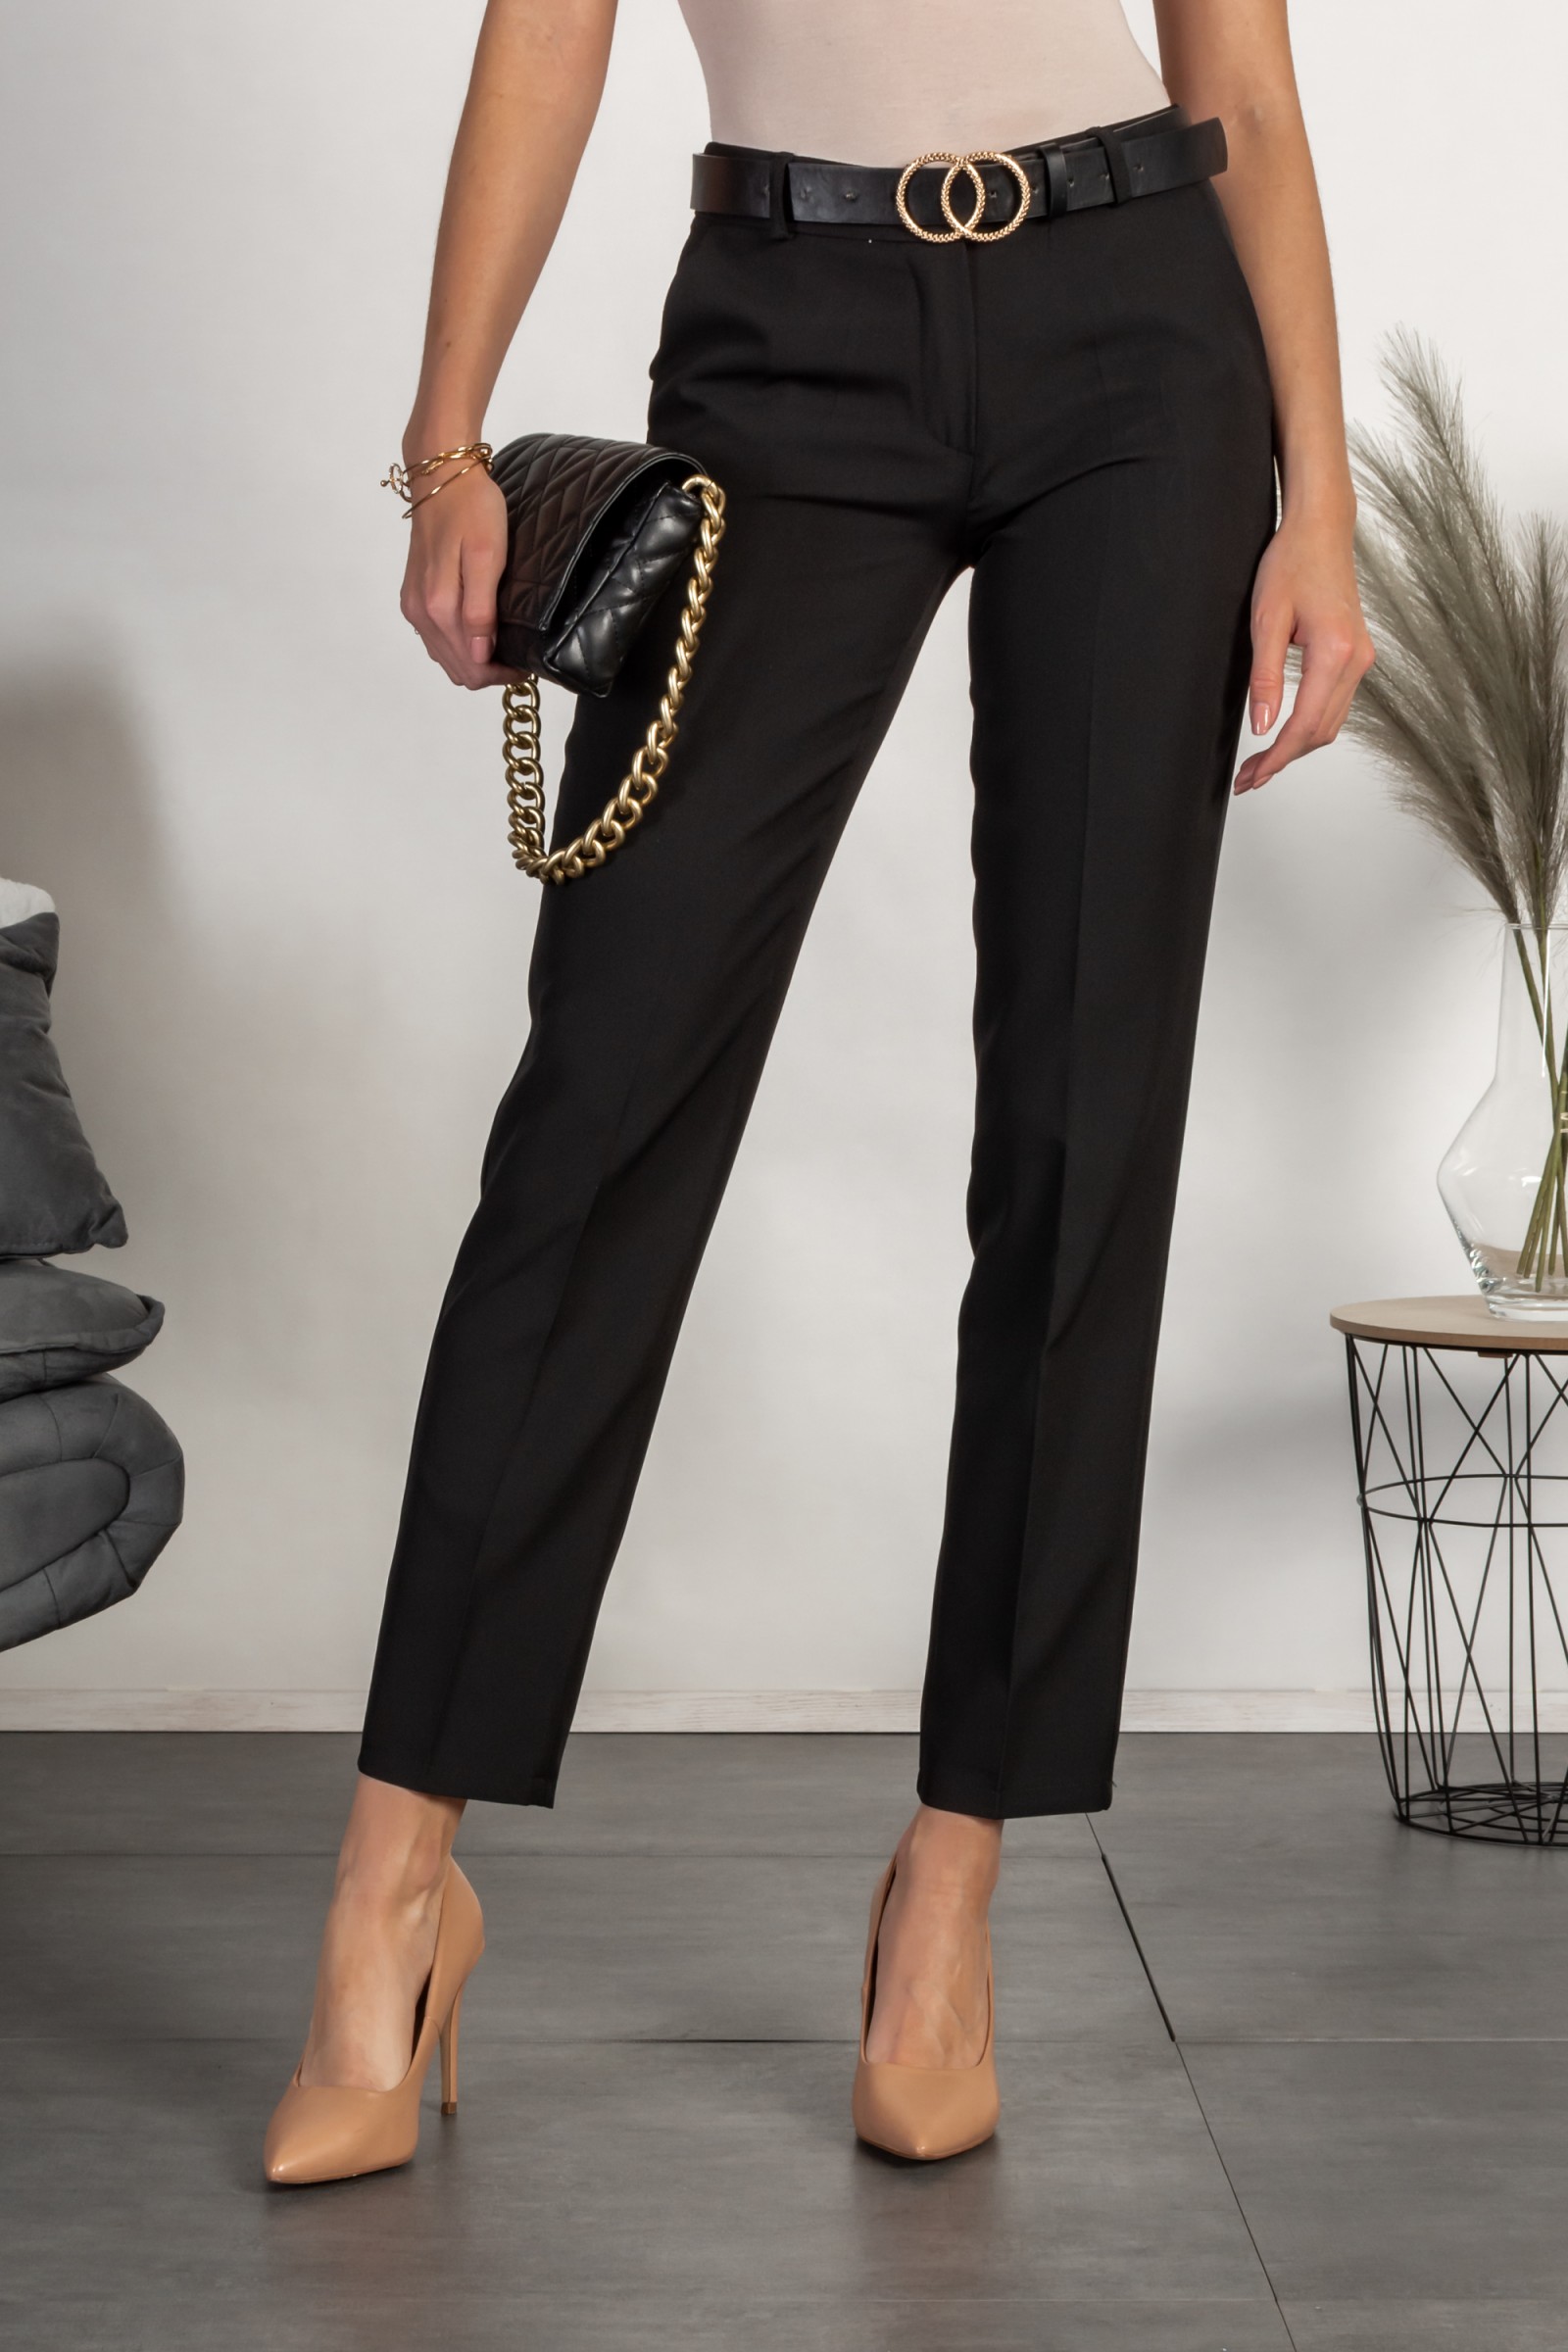 Pantaloni eleganti lunghi con pantalone dritto Tordina, nero --53%